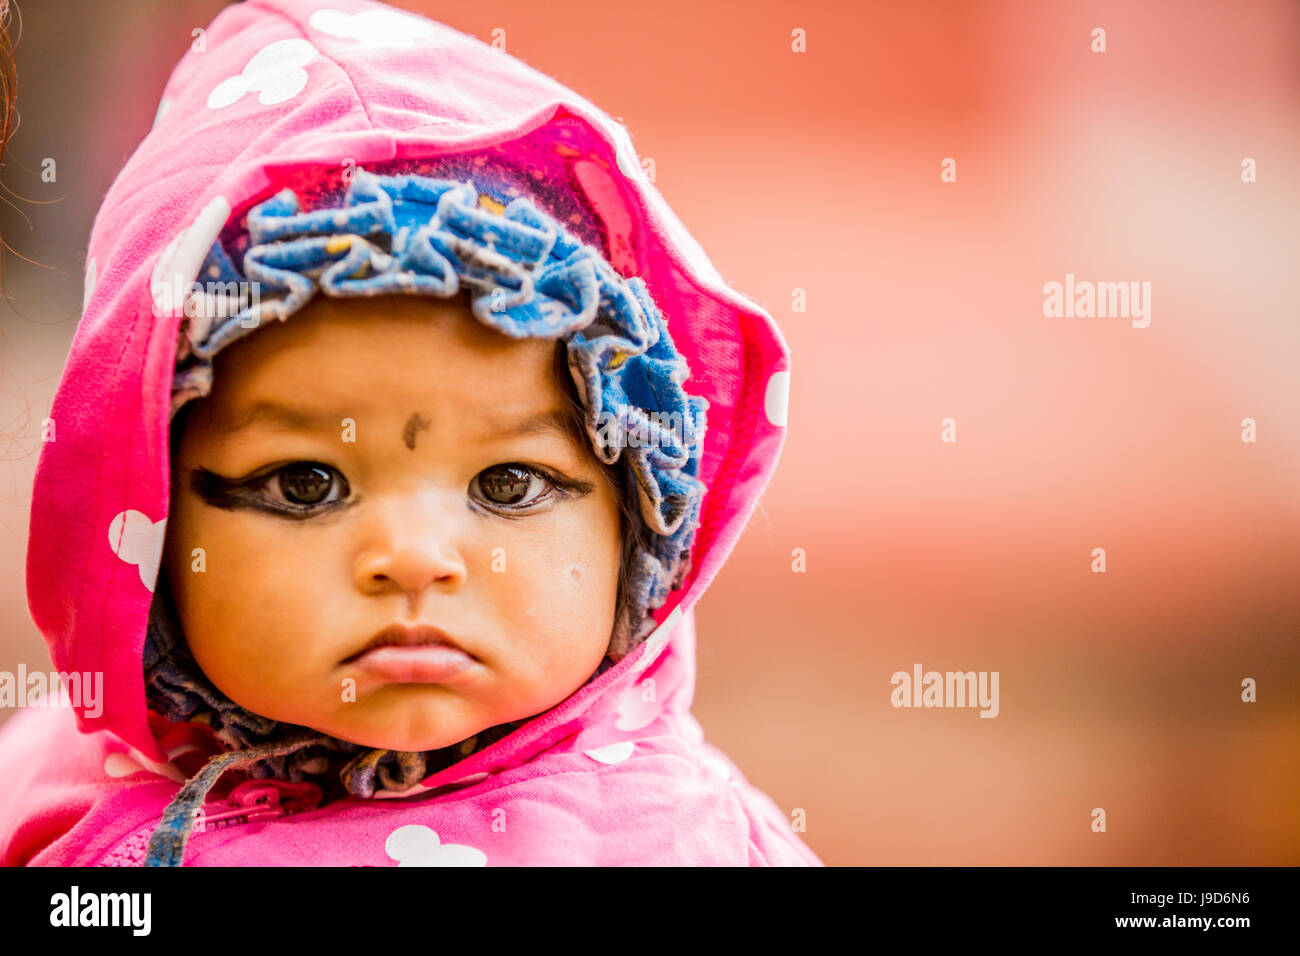 Baby with kohl-painted eyes, Kathmandu, Nepal, Asia Stock Photo